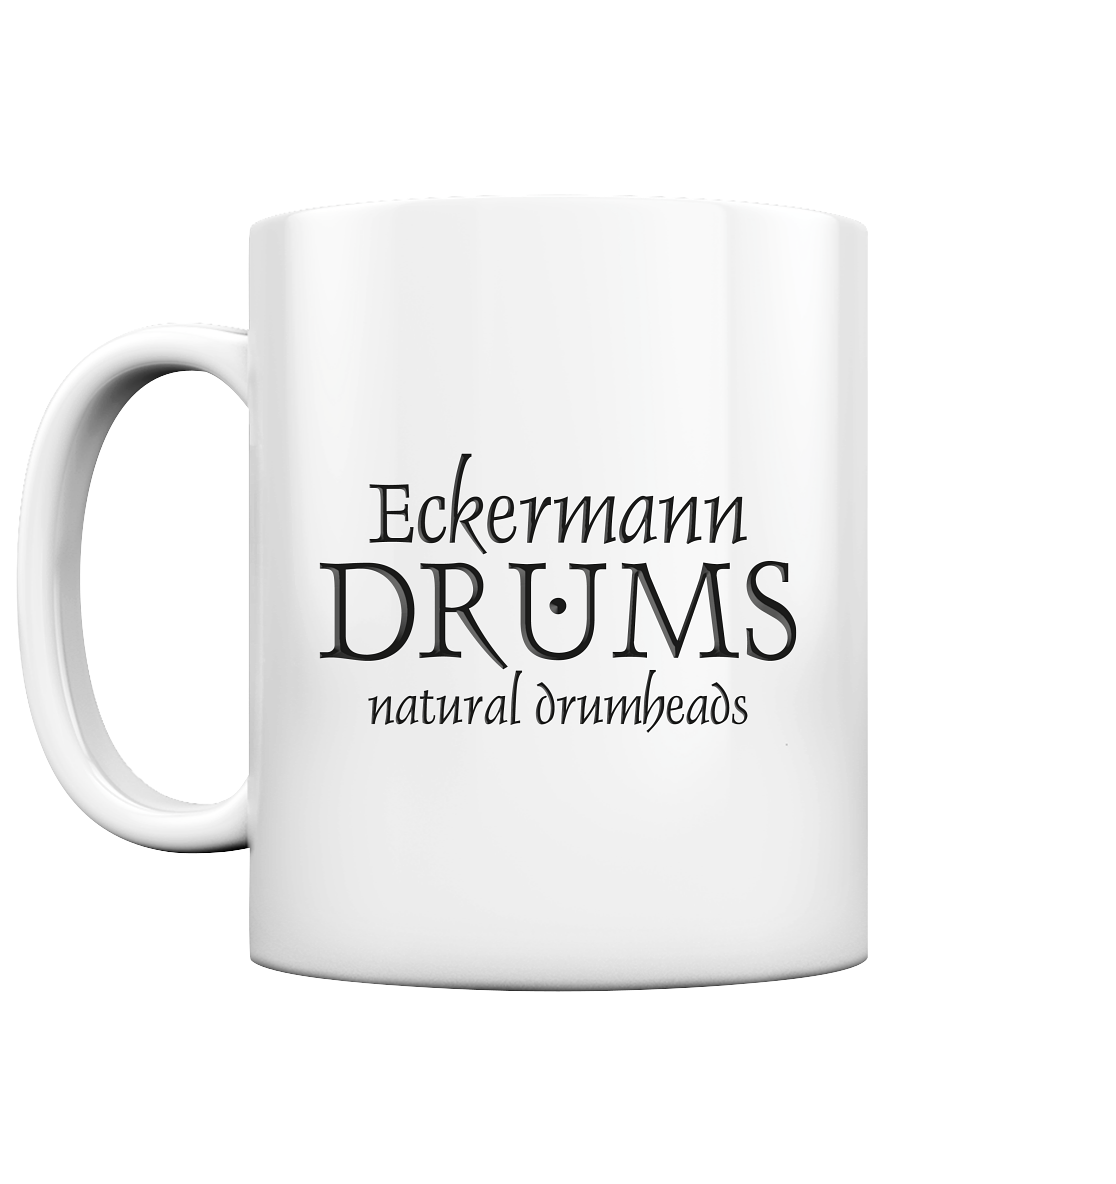 Eckermann DRUMS - 